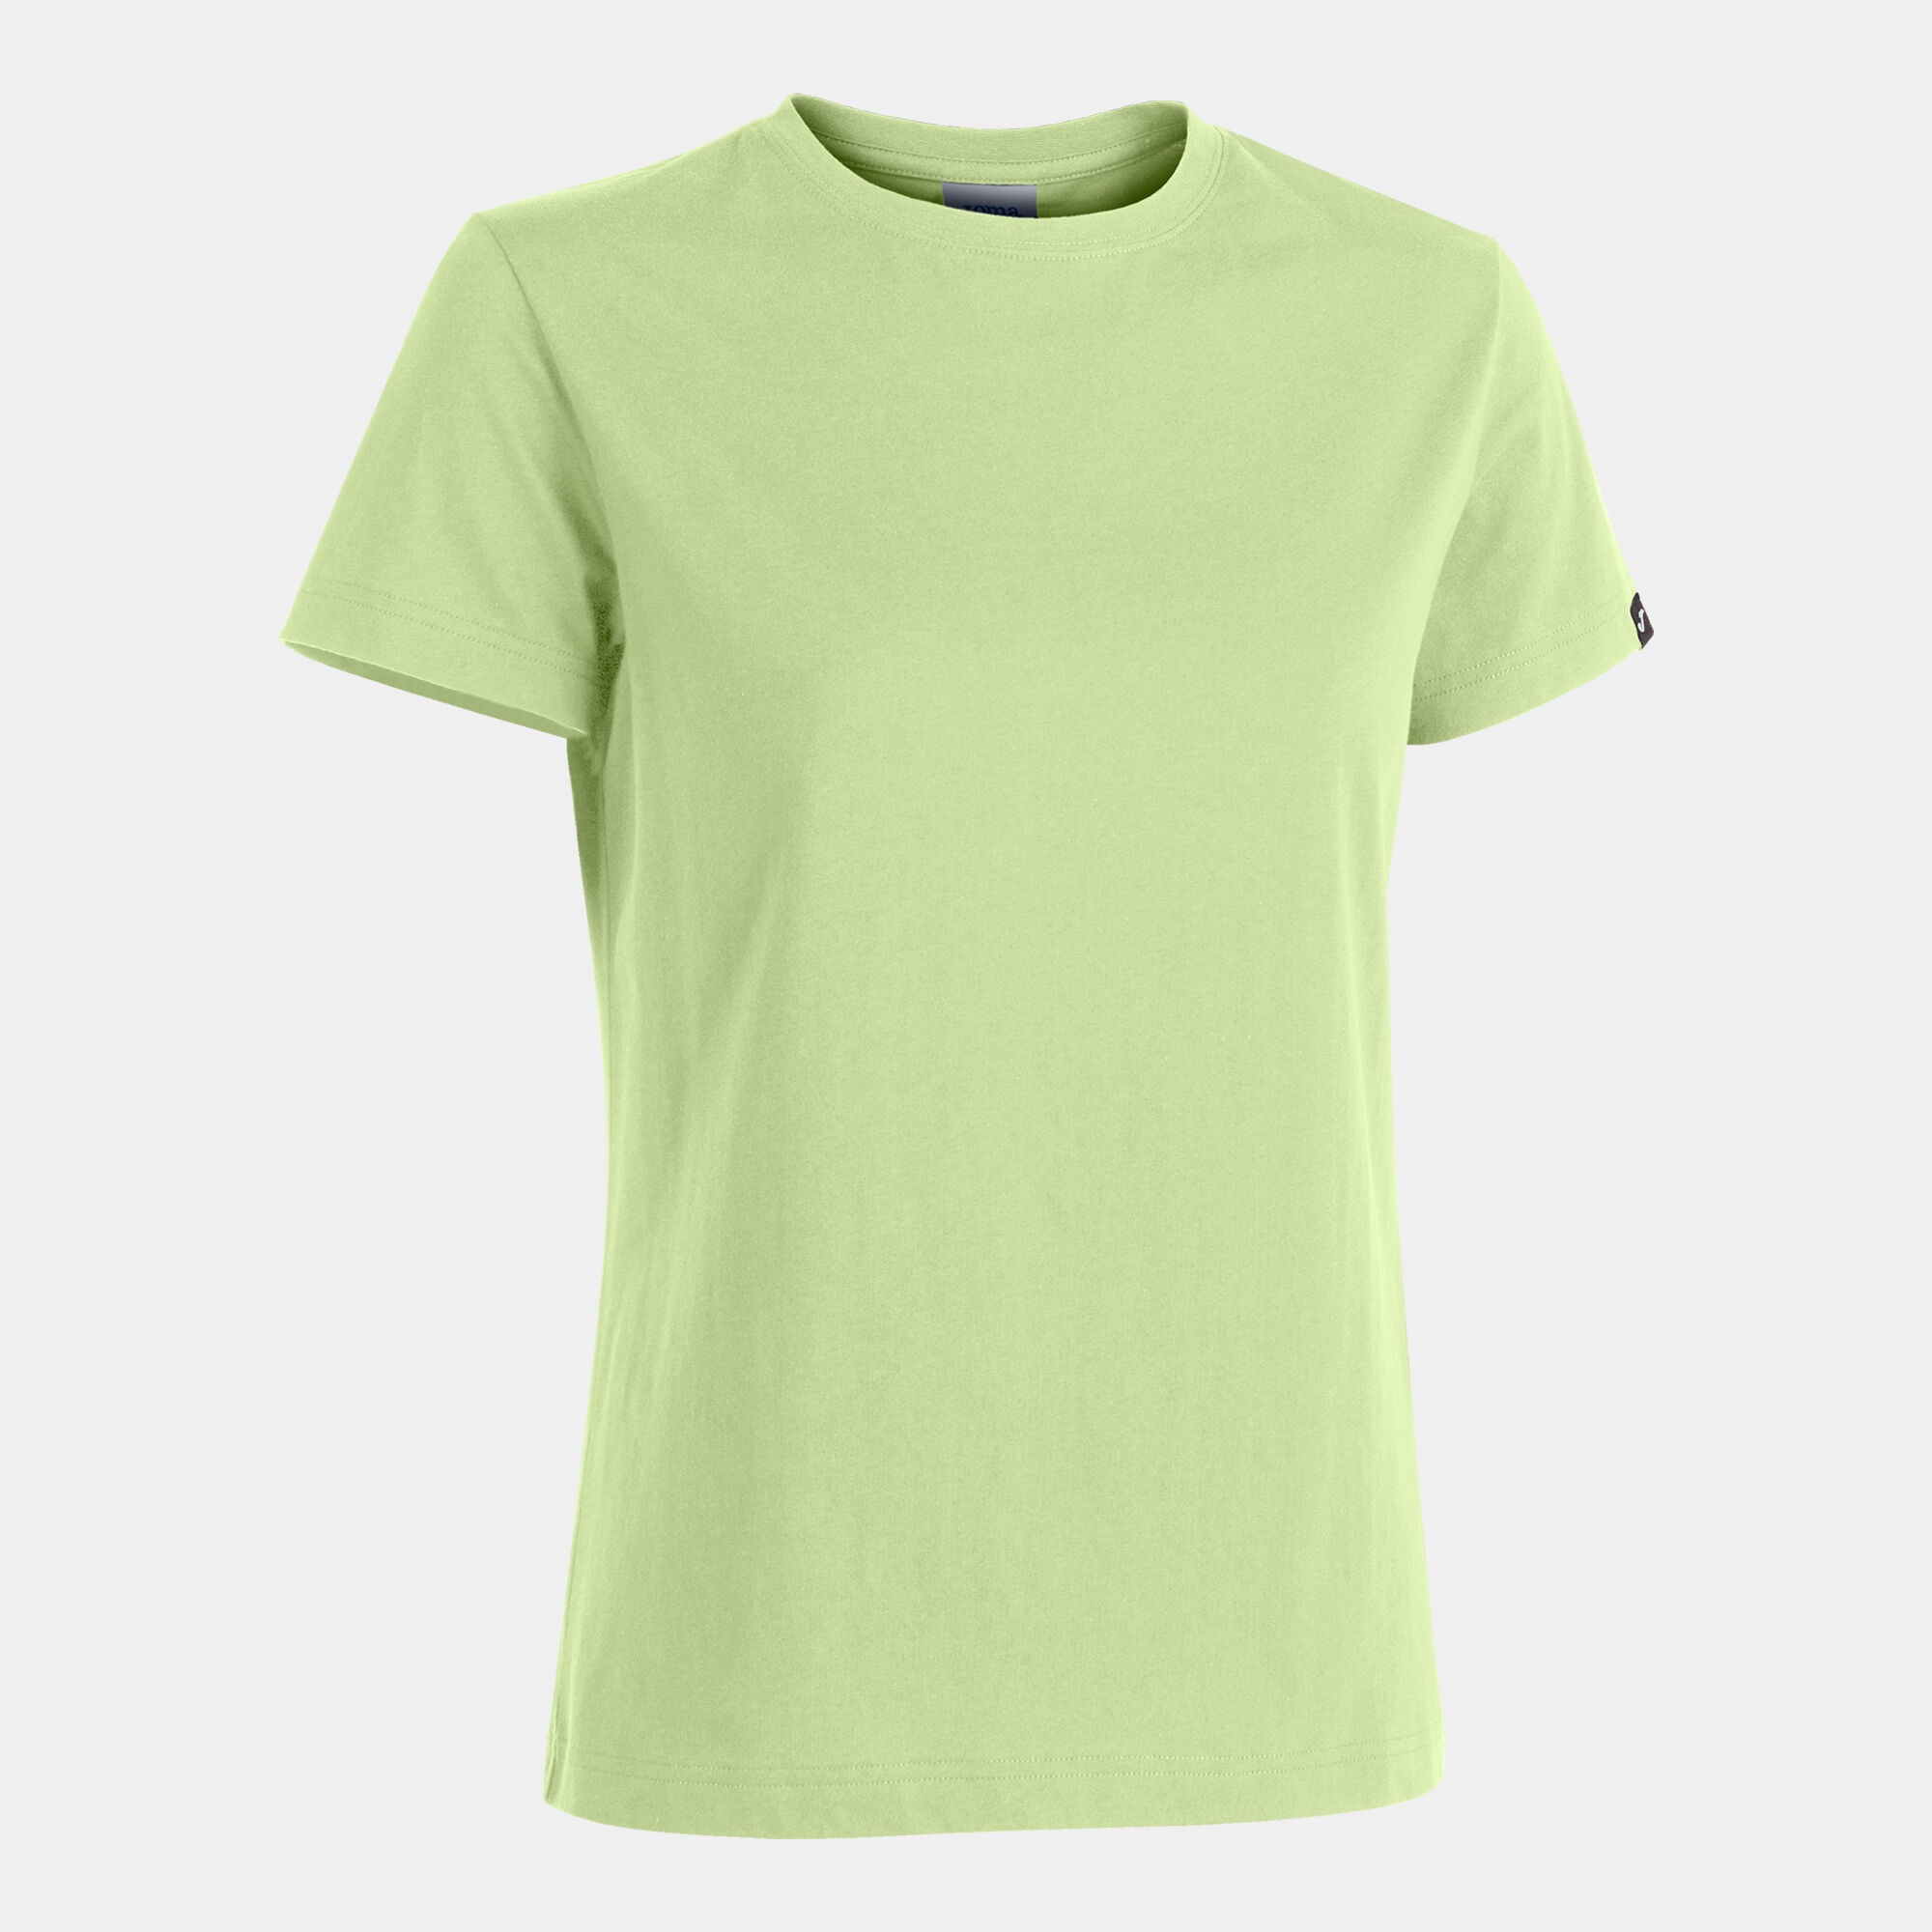 Camiseta manga corta mujer Desert verde